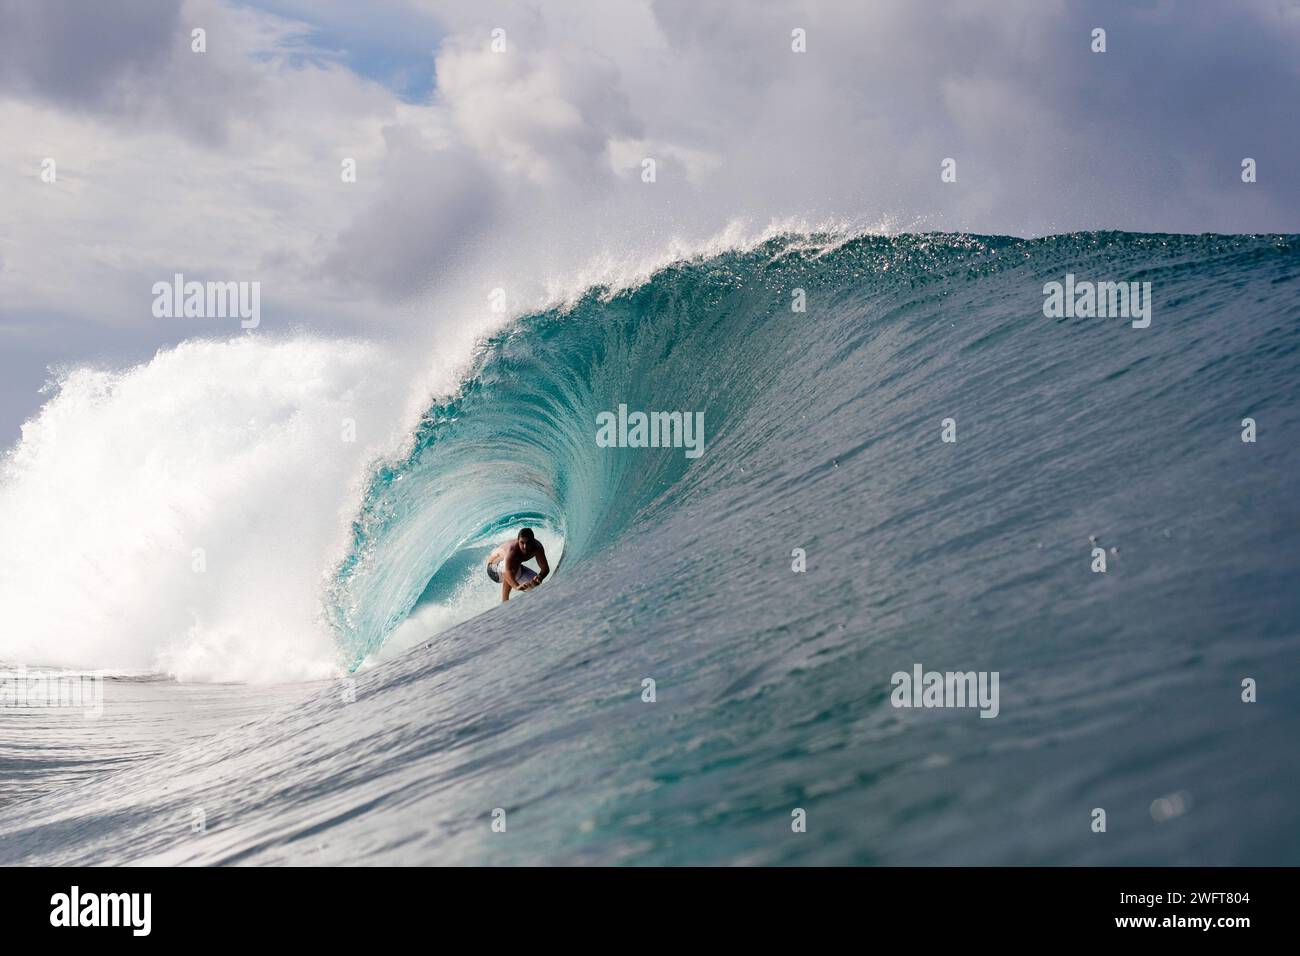 Polinesia francese, Tahiti, sito di surf a Teahupo'o: Wave, tube. Teahupoo ospiterà la competizione di surf per le Olimpiadi estive del 2024, Foto Stock